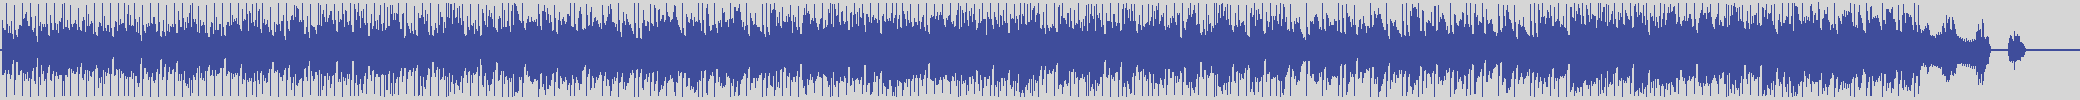 upr [UPR016] La Main - Jusqu'a L'os [Original Mix] audio wave form